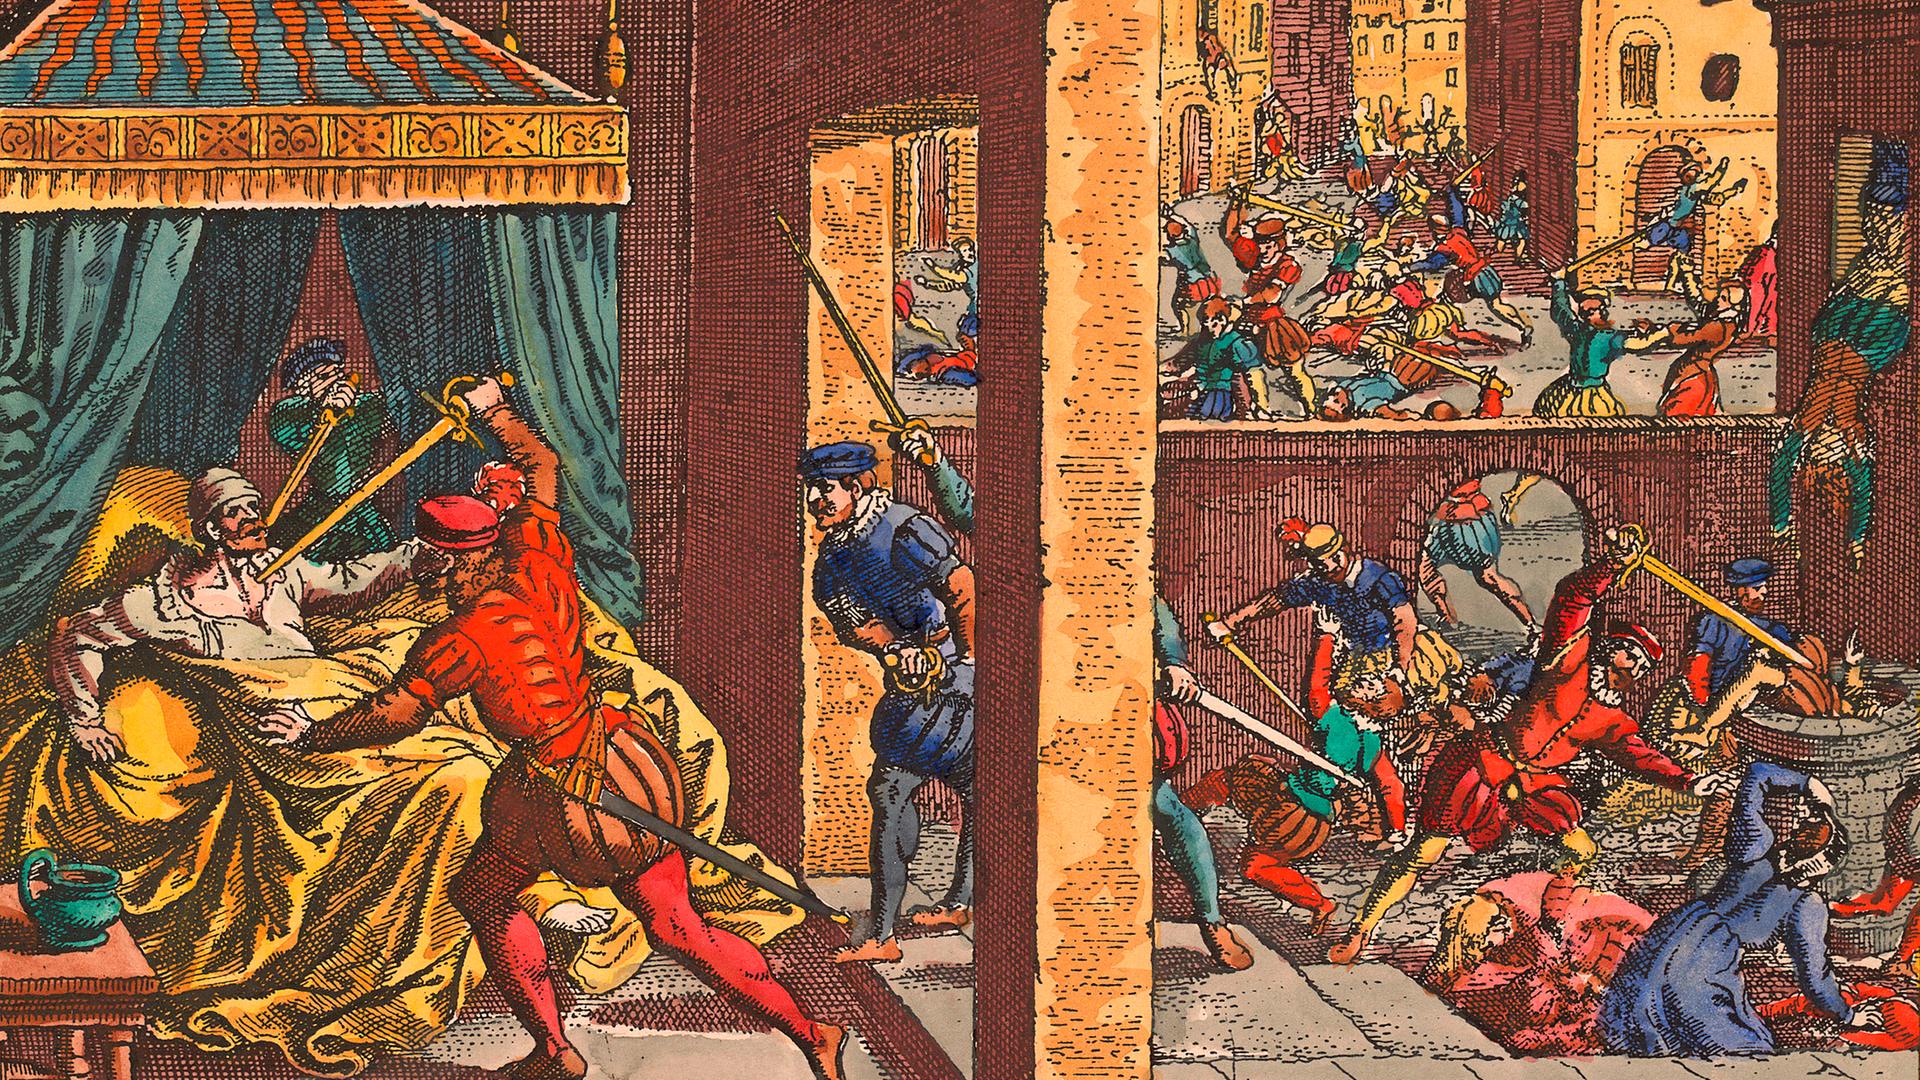 Die Bartholomäusnacht - Pogrom in Paris an den französischen Protestanten in der Nacht vom 23. zum 24. August 1572. Kupferstich von Matthäus Merian von 1630

